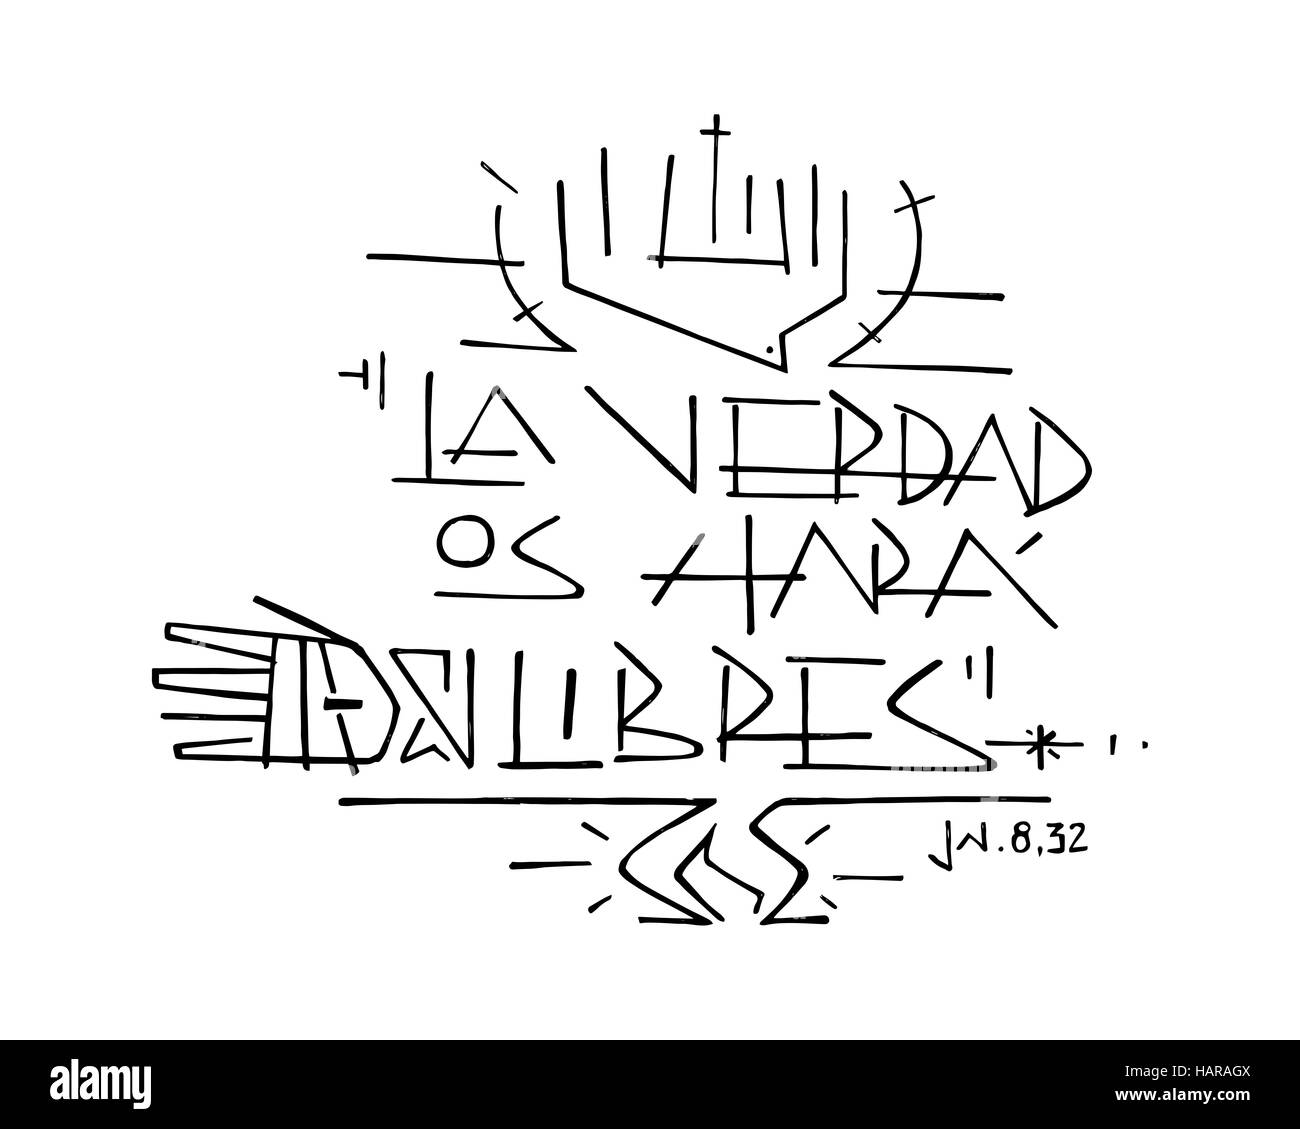 Hand drawn vector illustration ou dessin de Jésus Christ phrase en espagnol : La Verdad os hara libres, ce qui signifie : La vérité vous rendra libre Banque D'Images